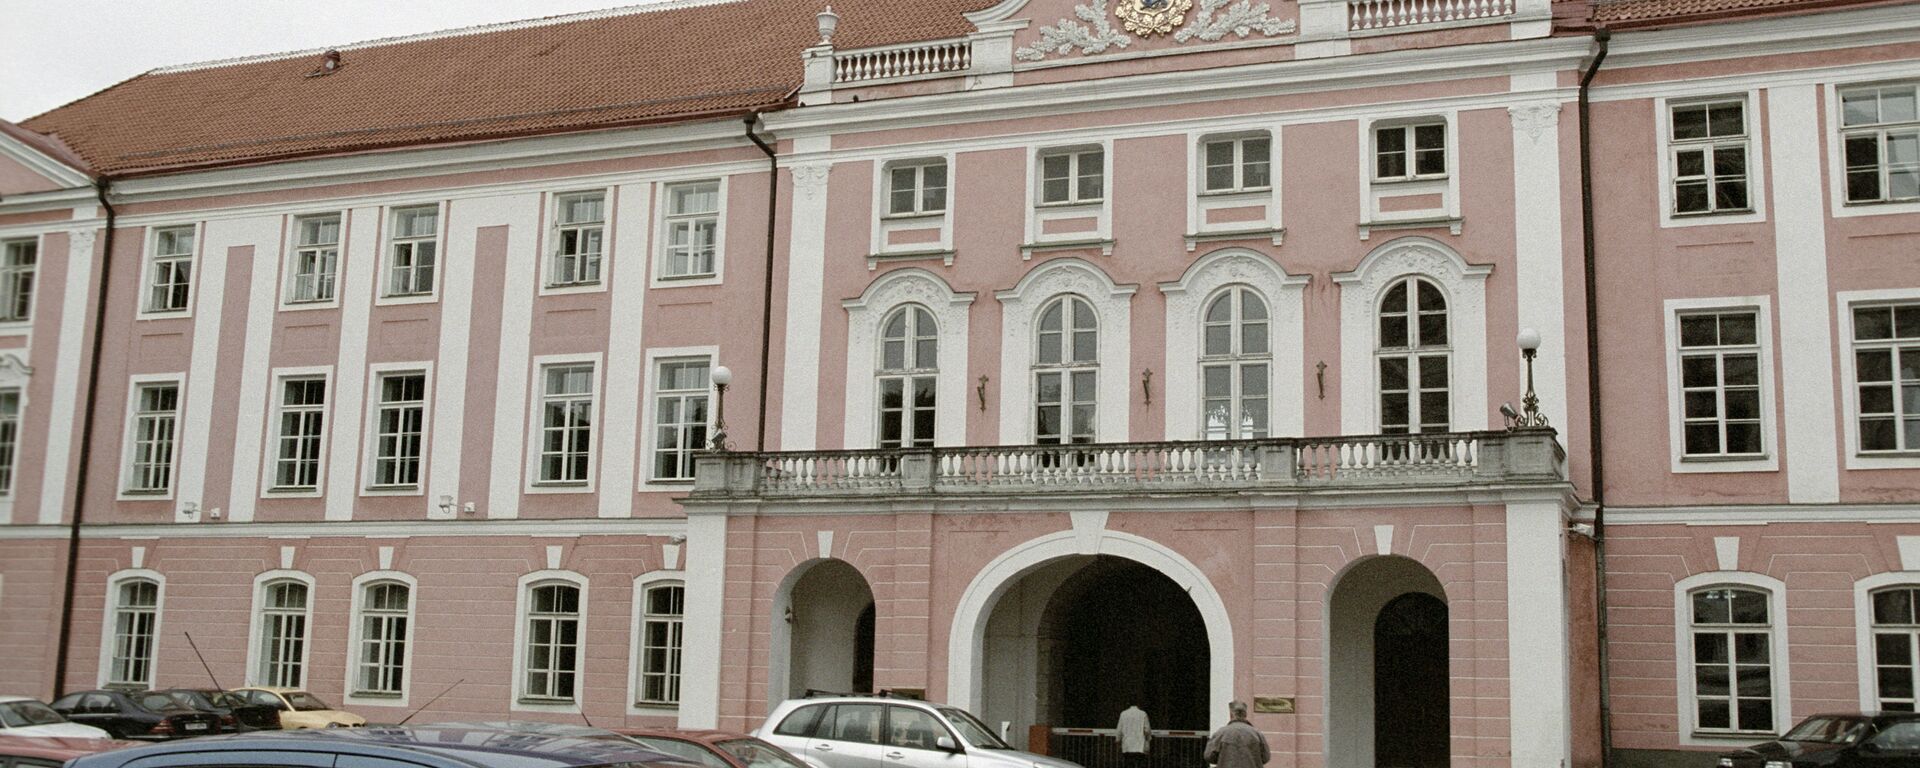 Зграда естонског парламента у Талину - Sputnik Србија, 1920, 02.01.2021